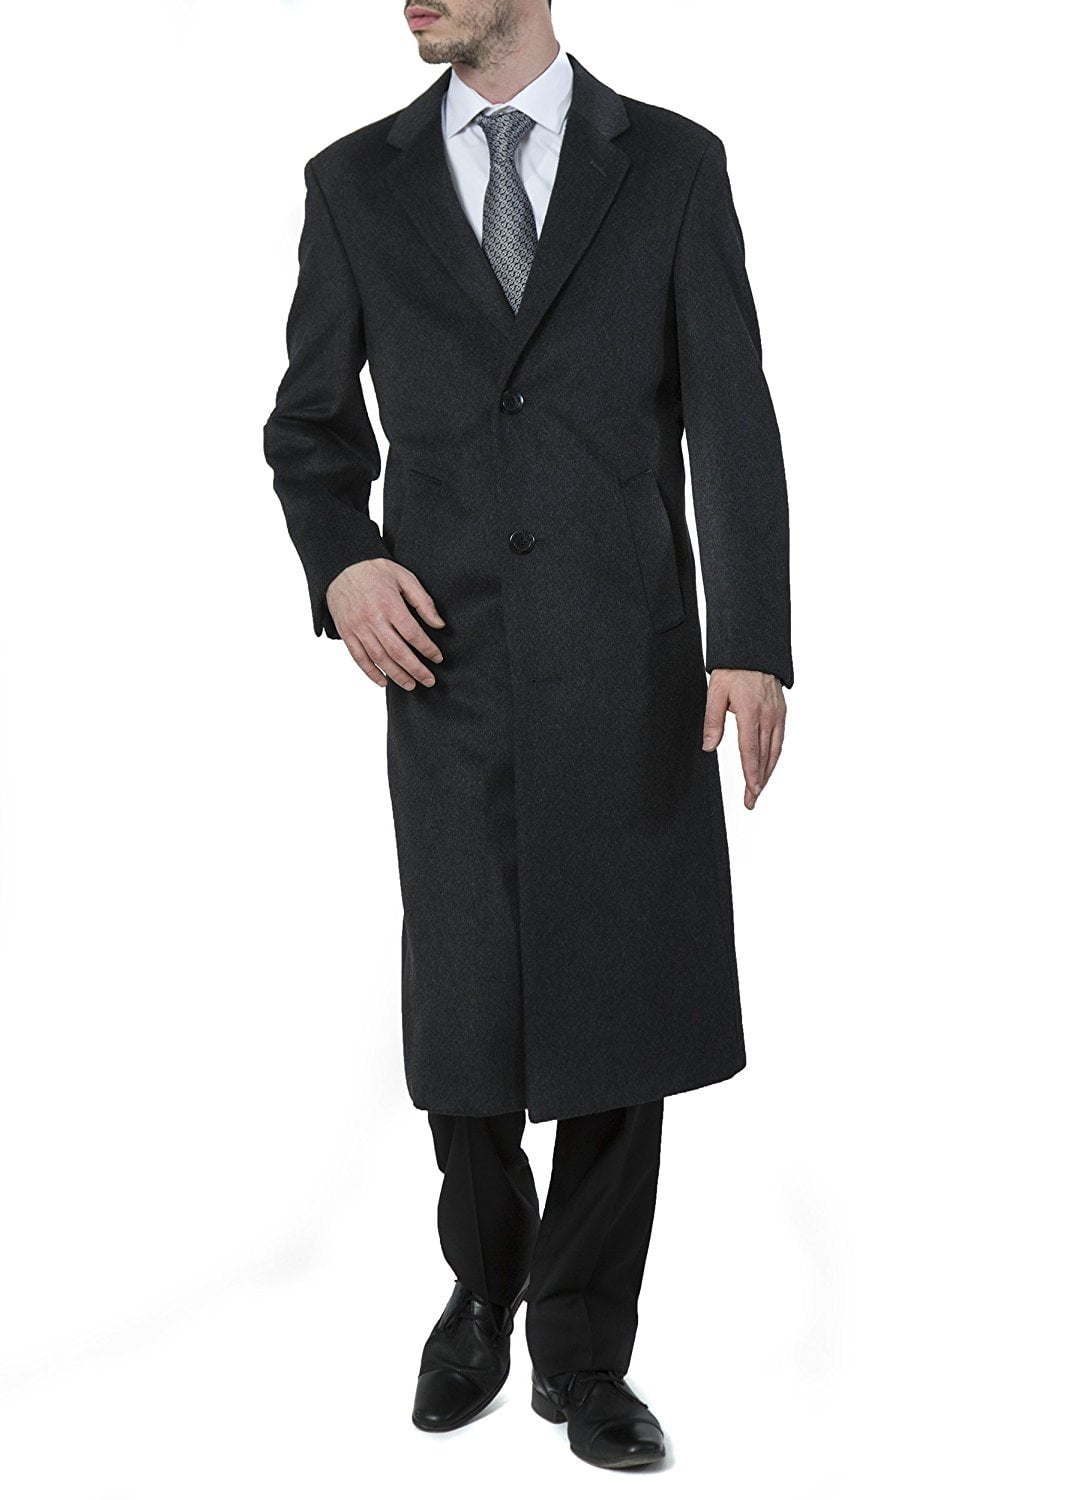 Men's Winter coat 3/4 Long Jacket Wool Cashmere Formal Evening Slim Overcoat 